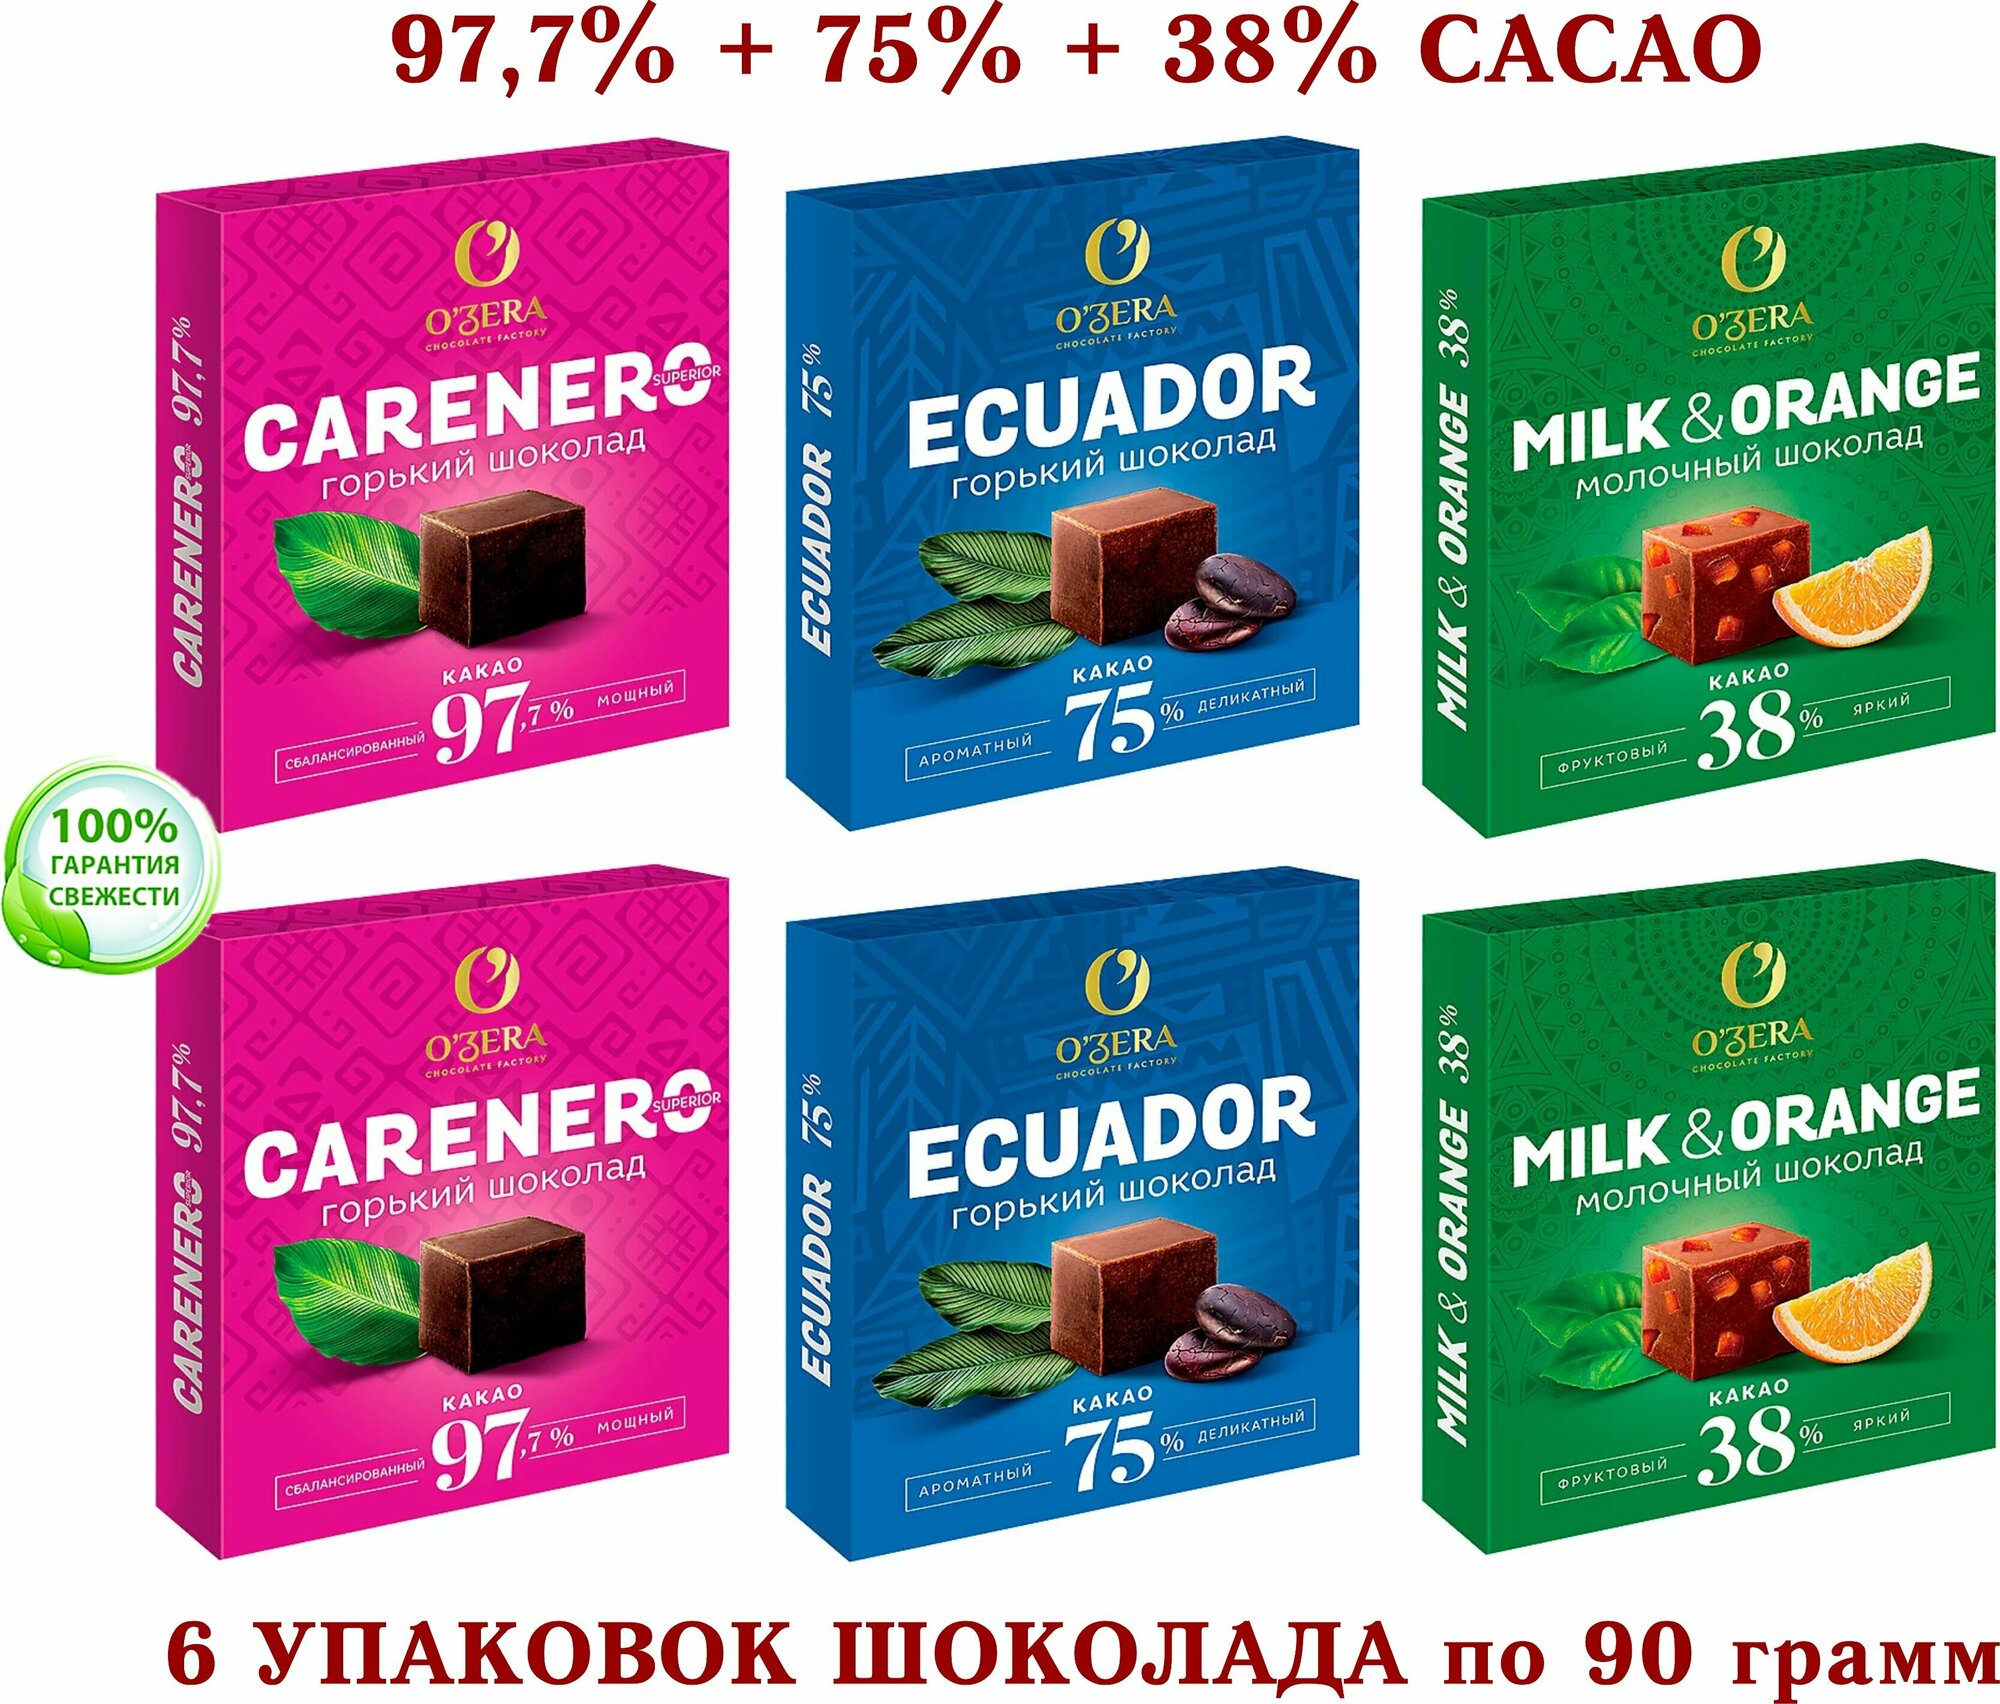 Шоколад OZERA ассорти - Carenero SuperioR 97,7 % + молочный с апельсином OZera Milk & Orange 38% + ECUADOR 75% - KDV - 6*90 гр.